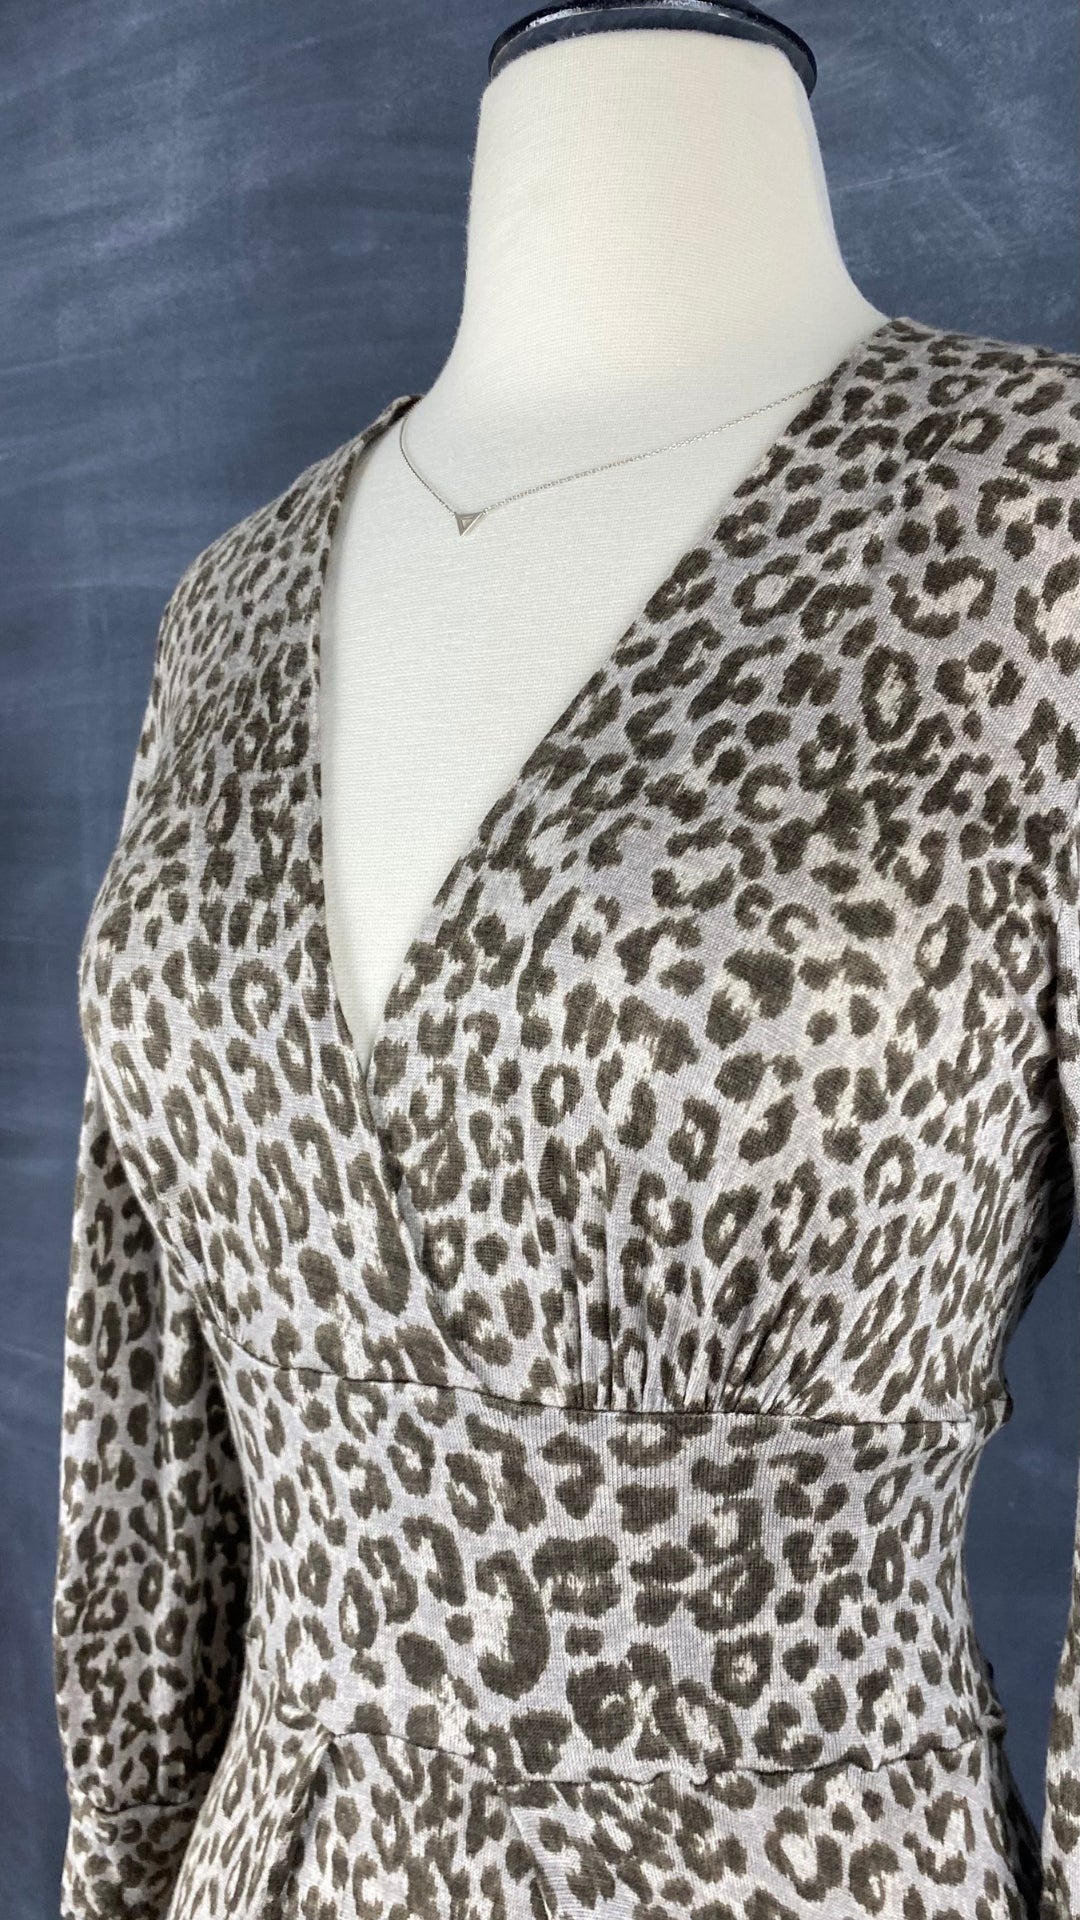 Robe en tricot fin et doux à motif léopard Banana Republic, taille xs-s. Vue de l'encolure.